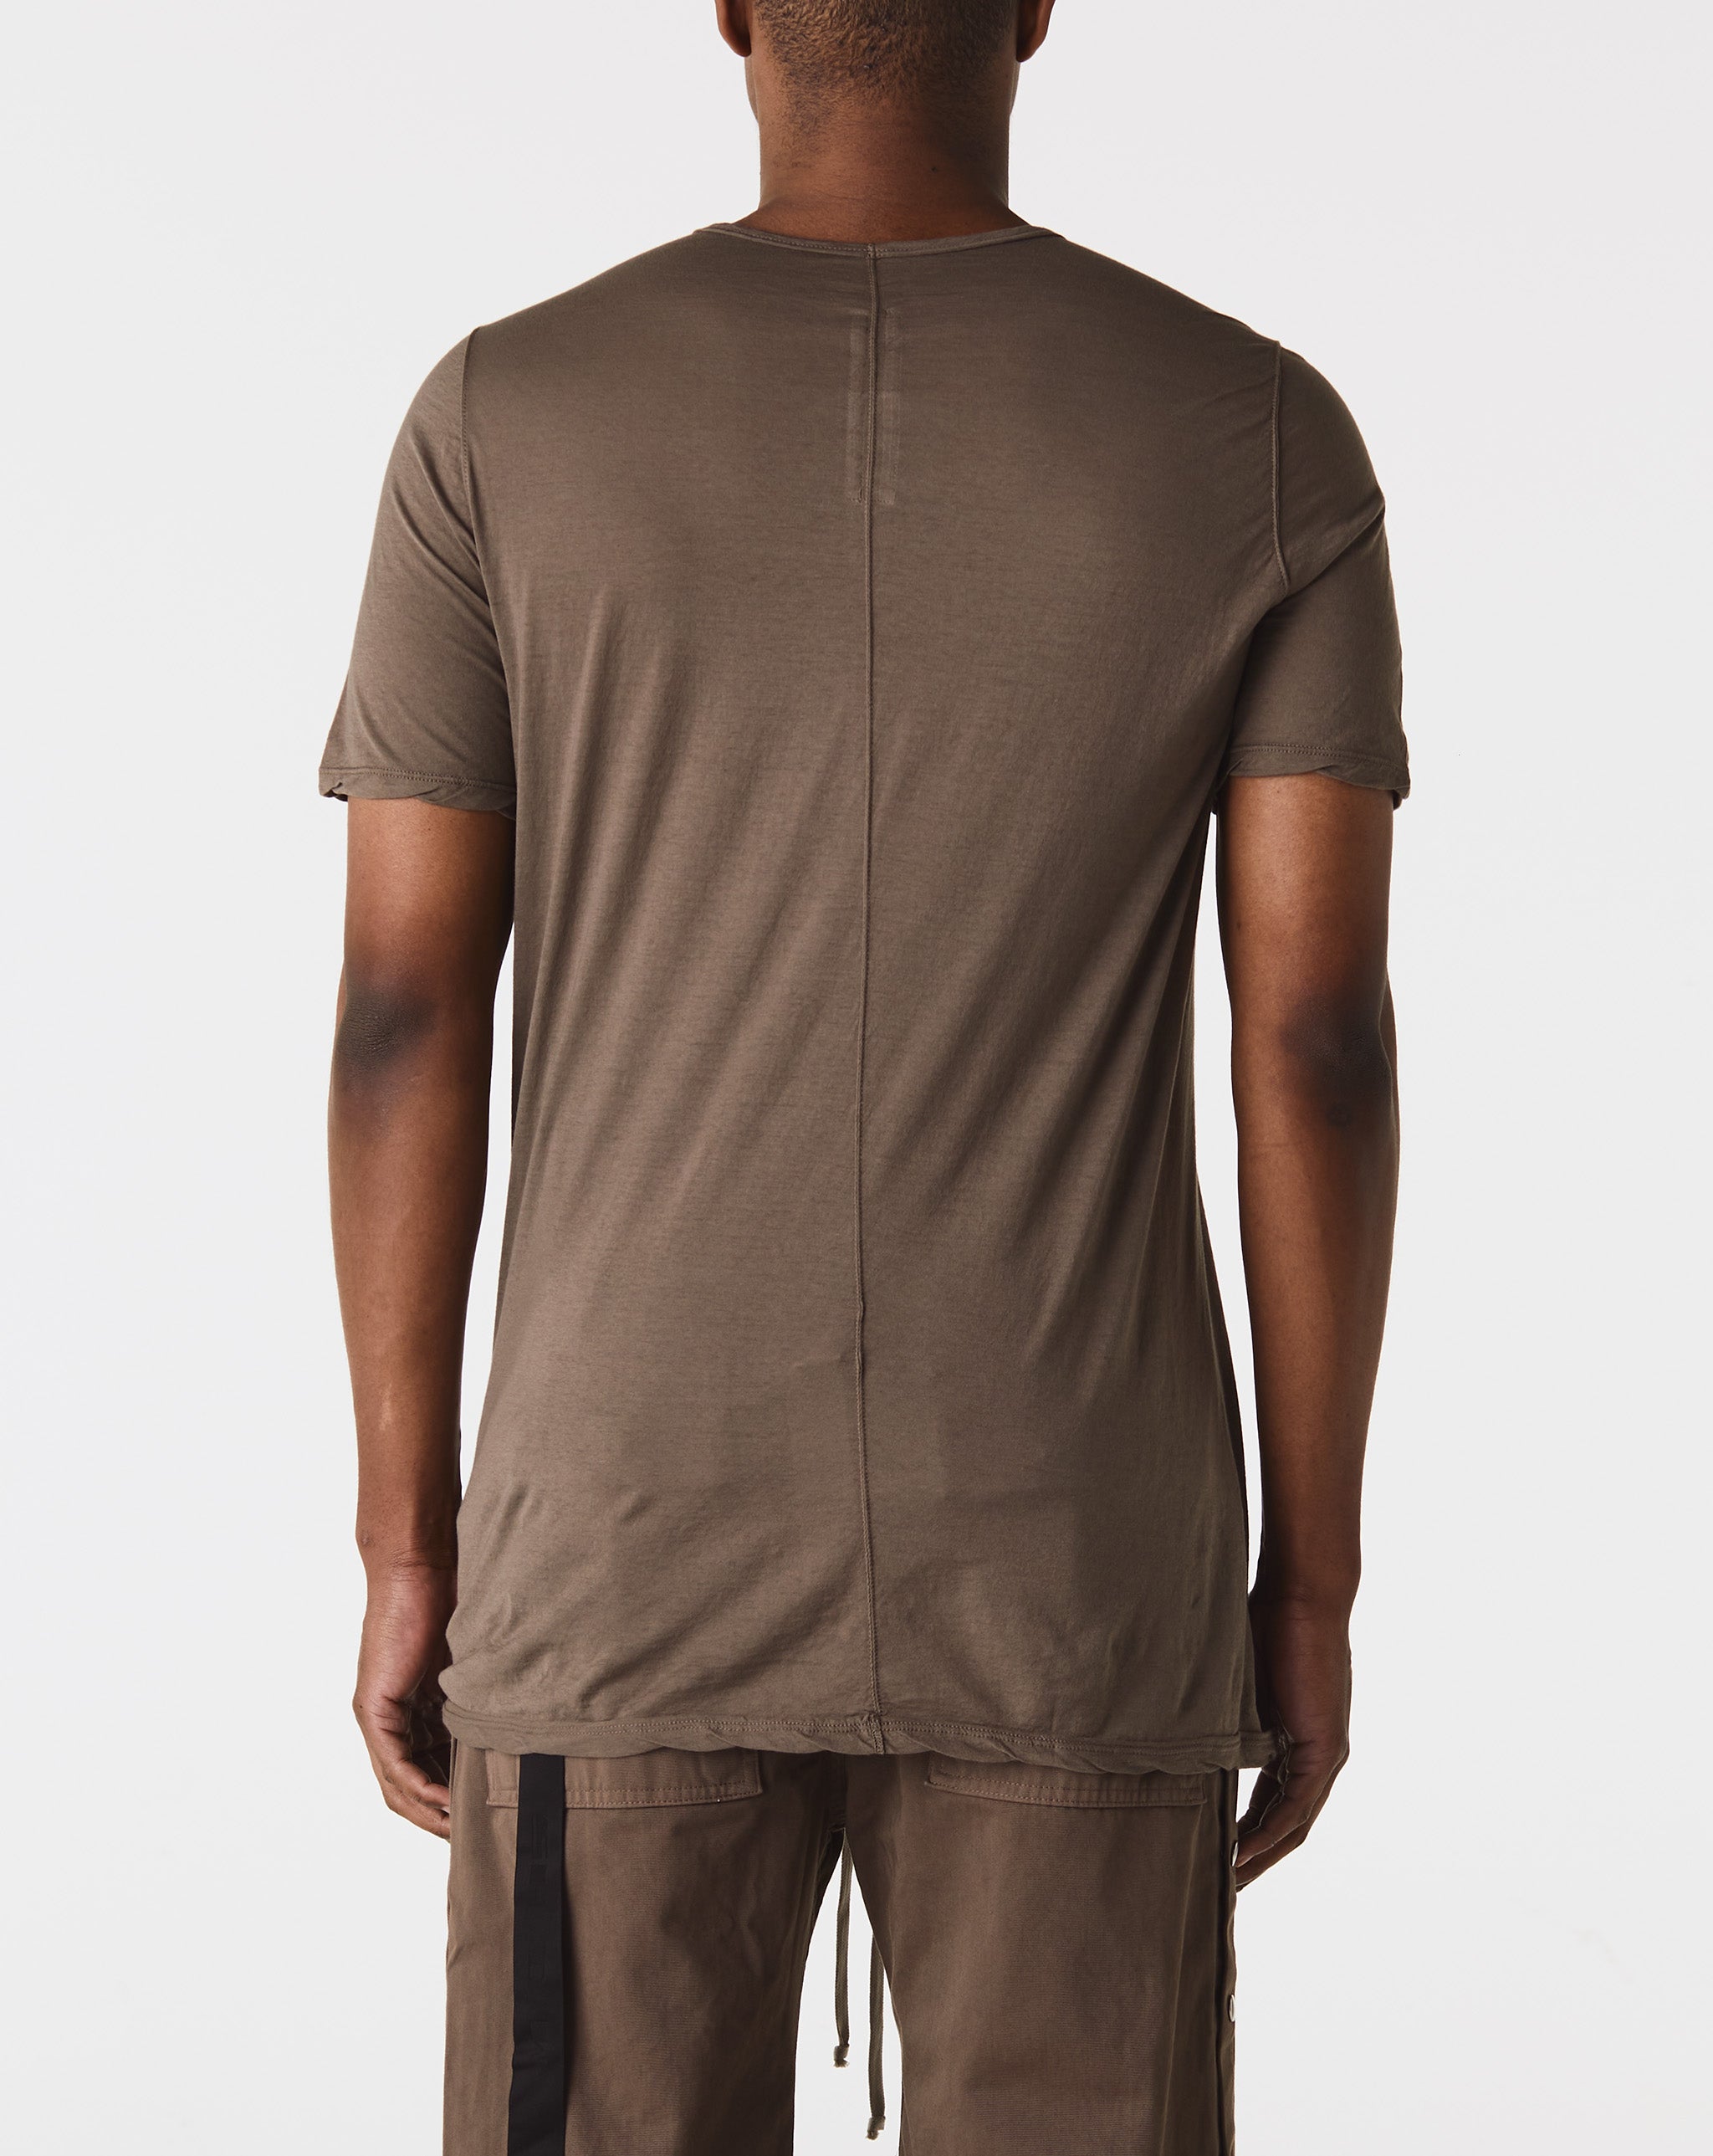 A Fleece Zip Jacket Level T-Shirt  - Cheap Erlebniswelt-fliegenfischen Jordan outlet